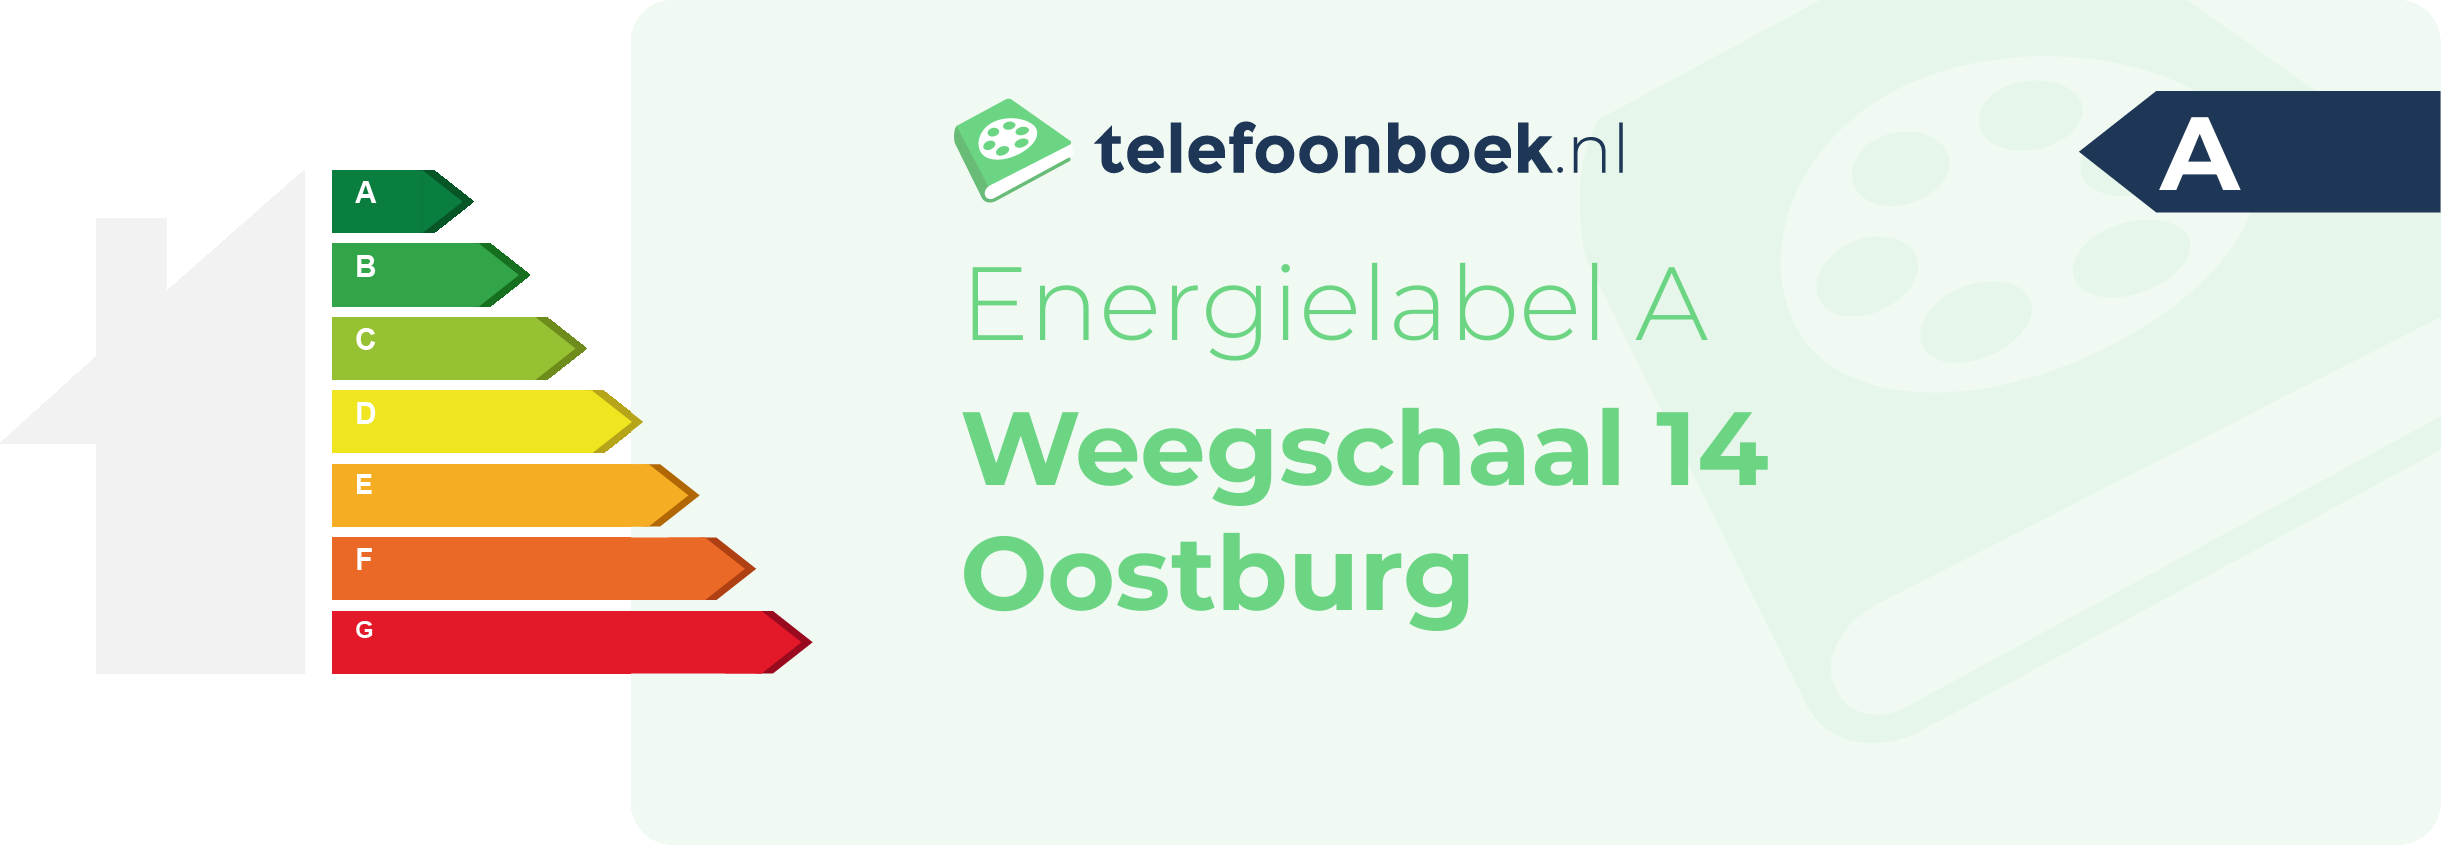 Energielabel Weegschaal 14 Oostburg